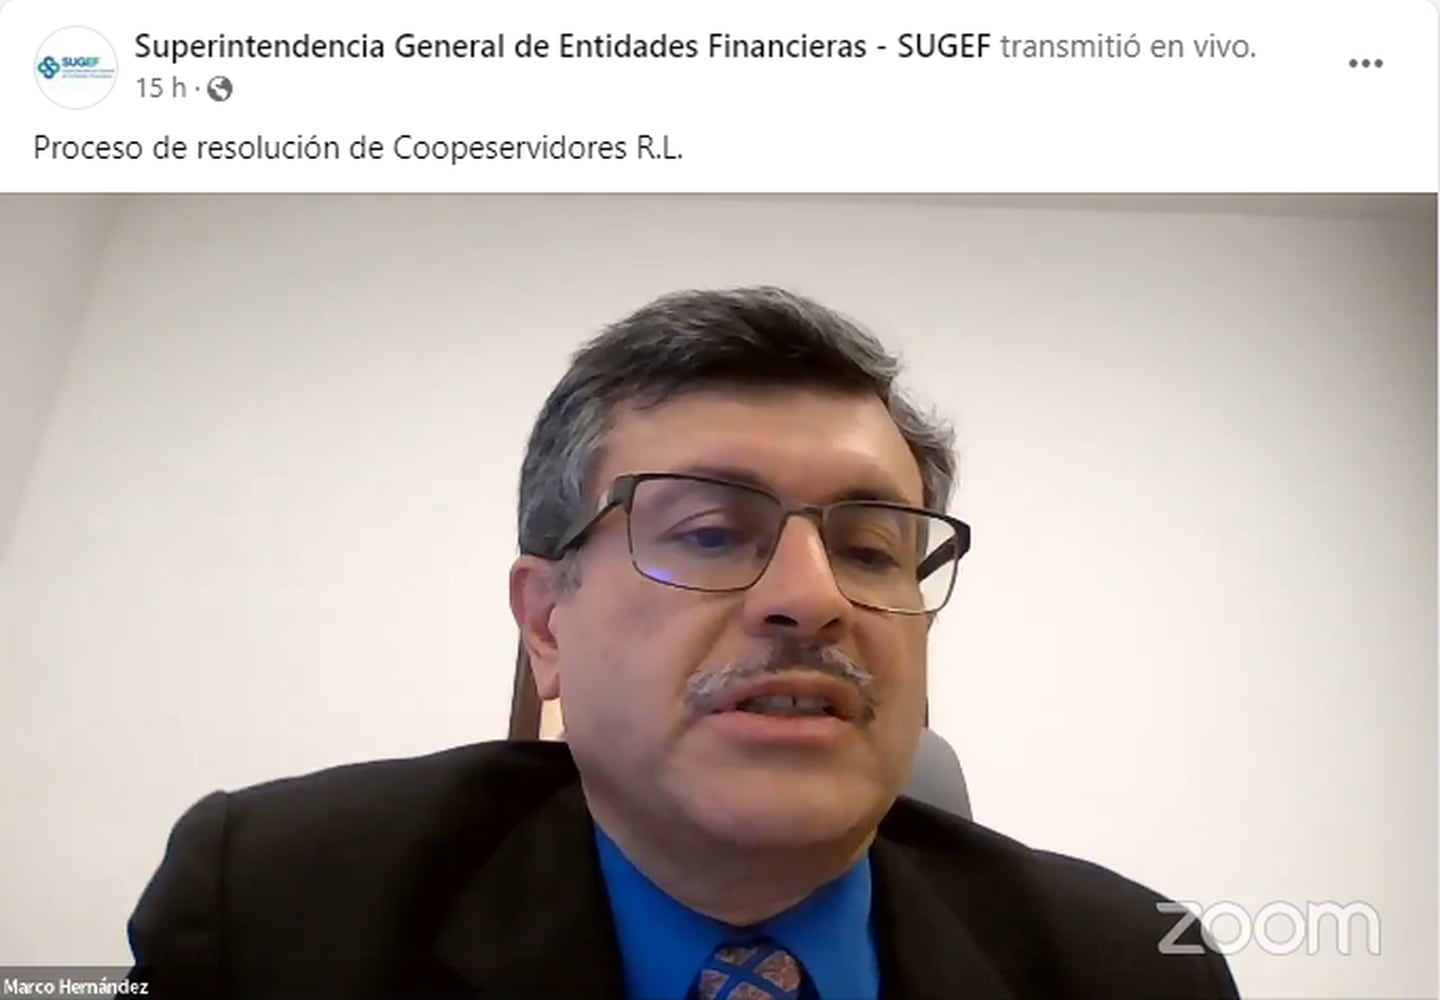 El interventor de Coopeservidores, Marco Hernández, responde consultas de los depositantes de la cooperativa en una videoconferencia, este viernes 21 de junio.